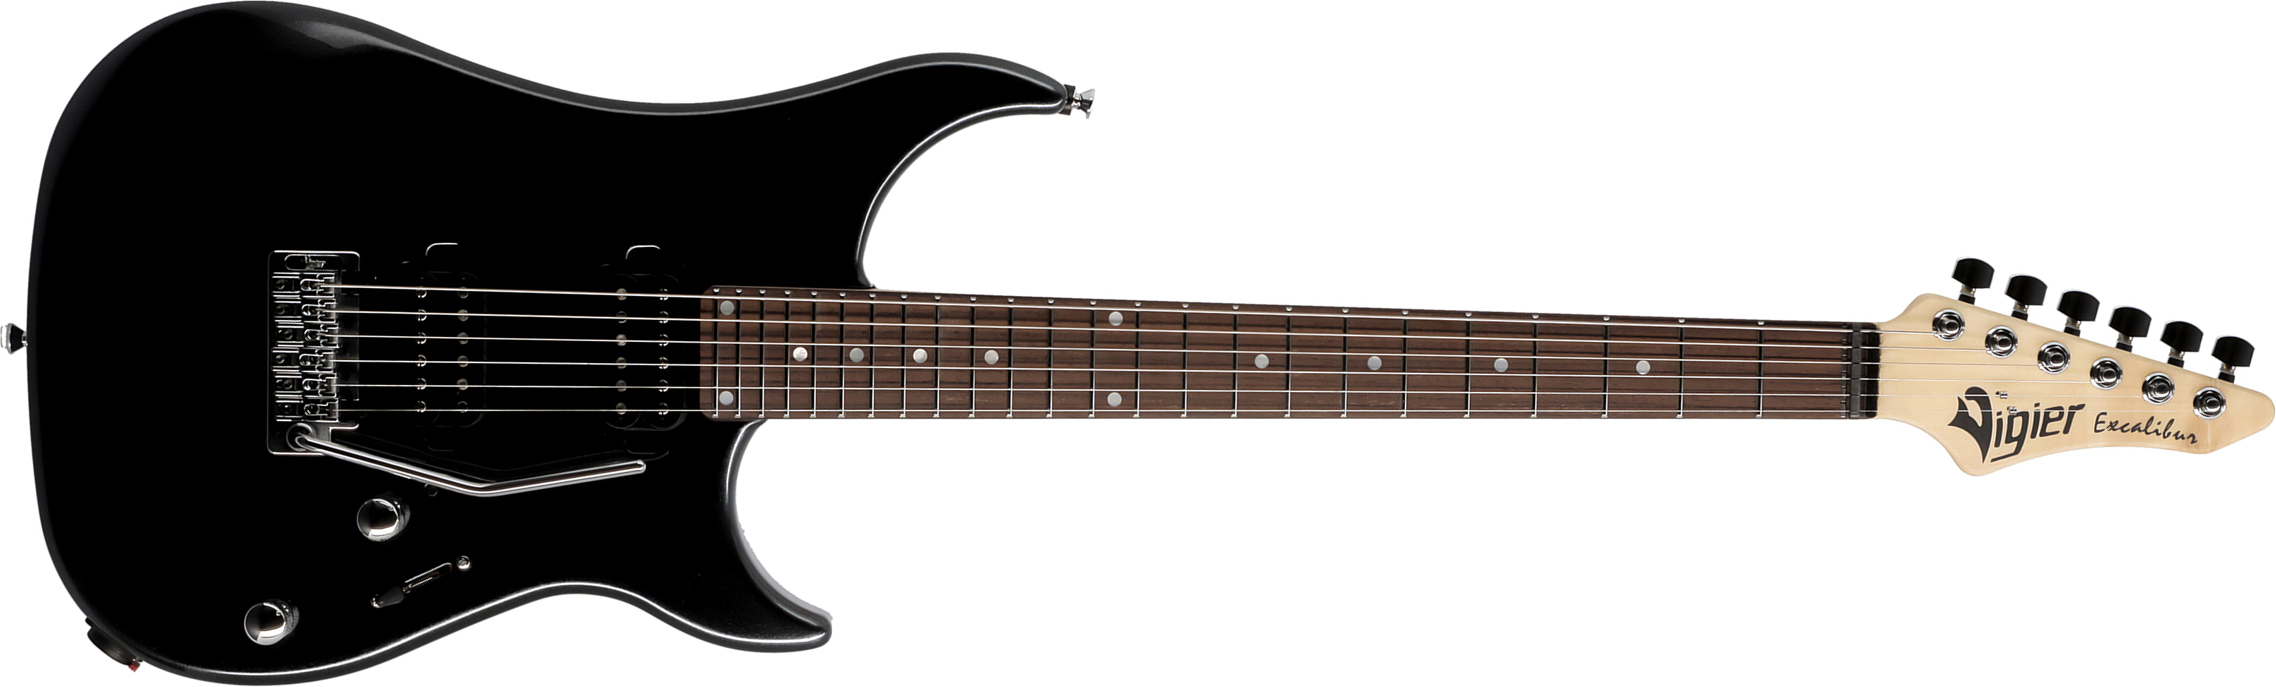 Vigier Excalibur Thirteen 2h Trem Rw - Black Night - Elektrische gitaar in Str-vorm - Main picture